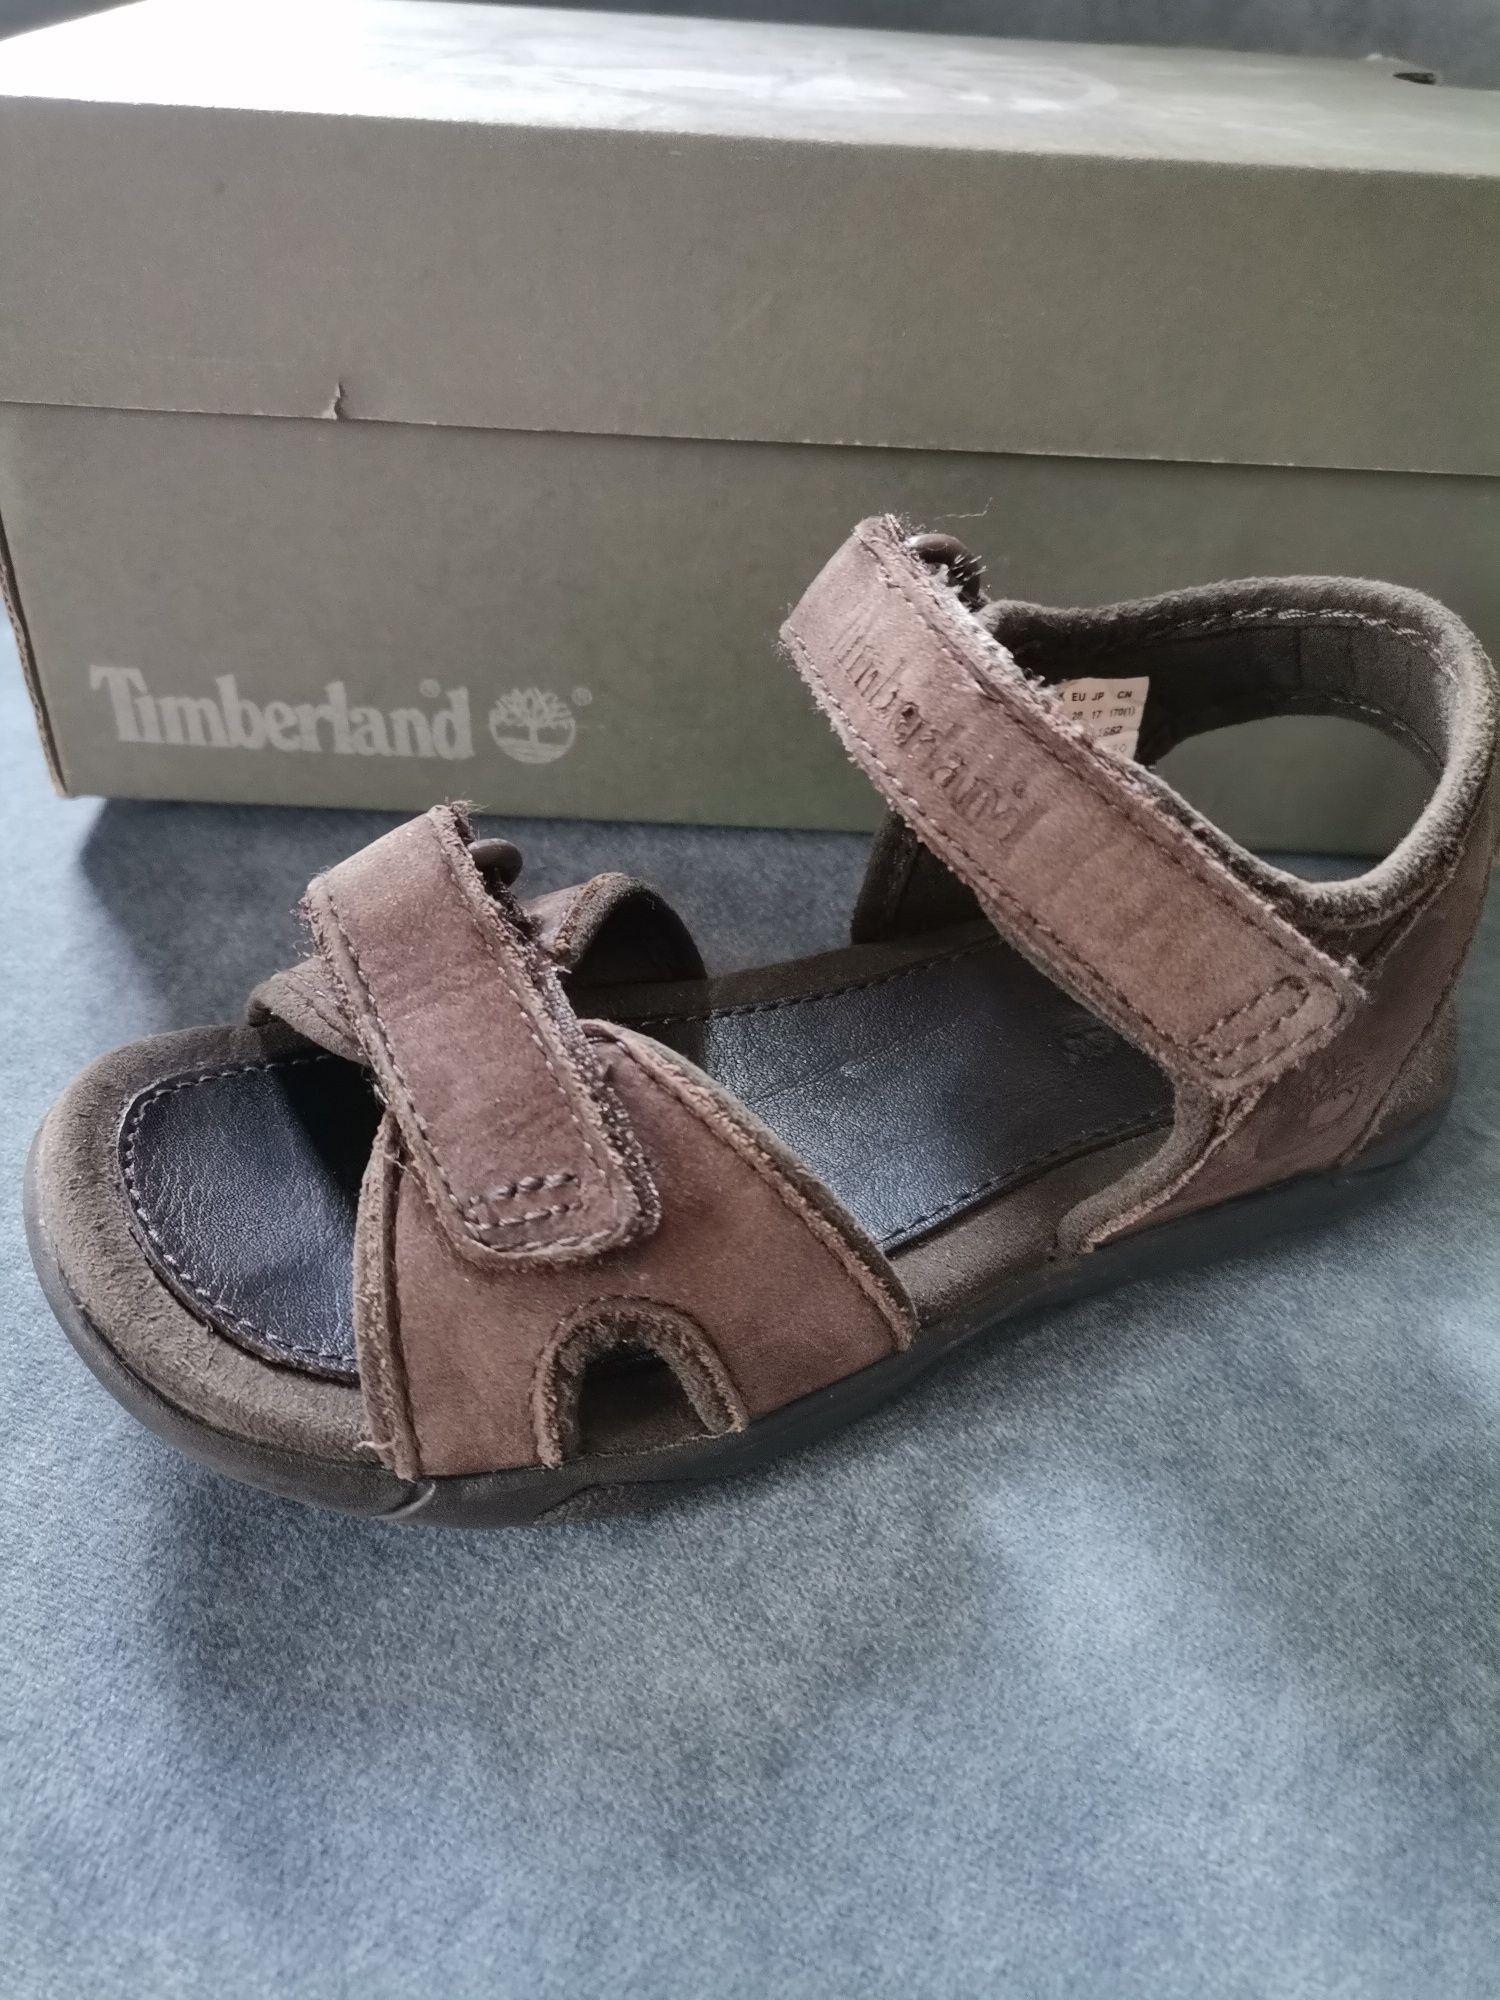 Sandałki dla chłopca Timberland -skóra, czekoladowy brąz,  rozmiar 28